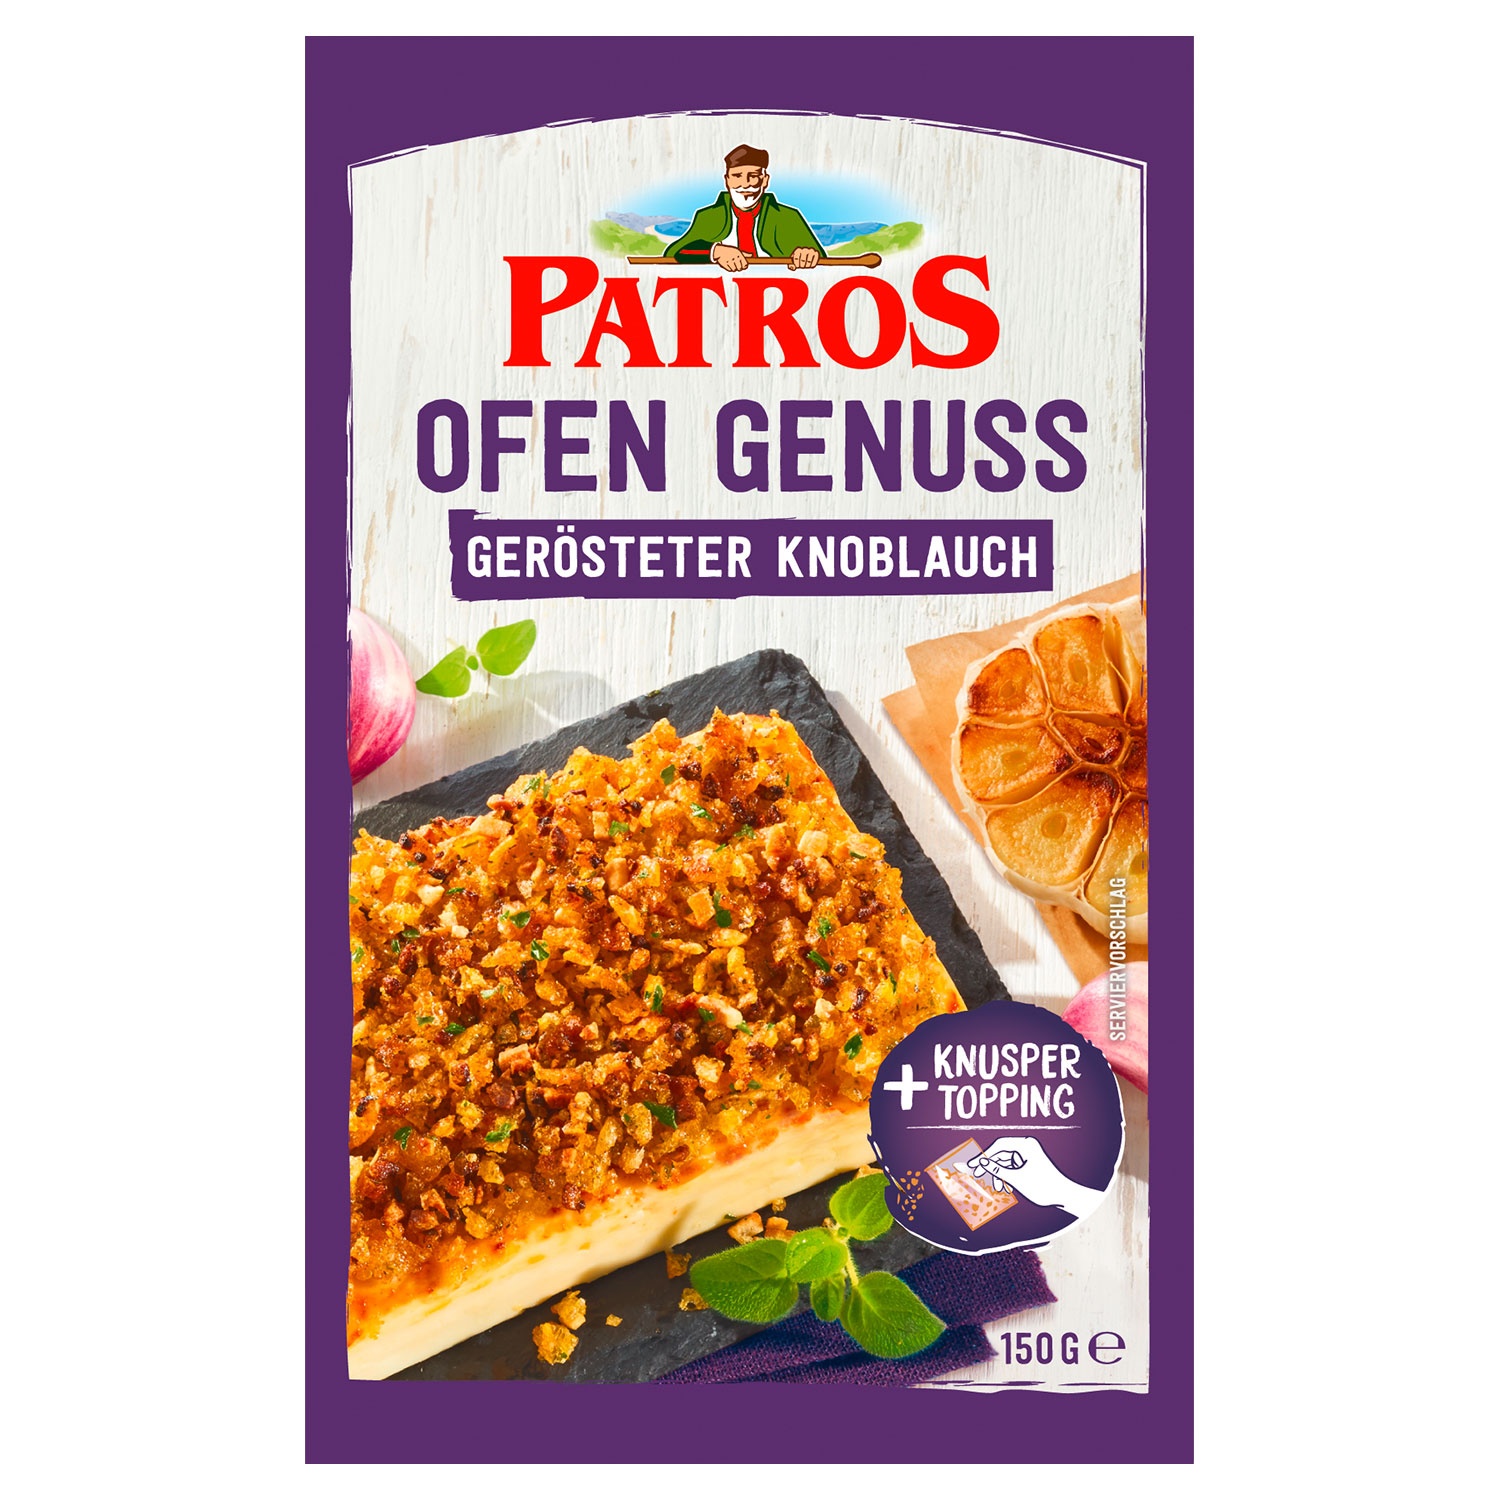 PATROS Ofen Genuss 150 g